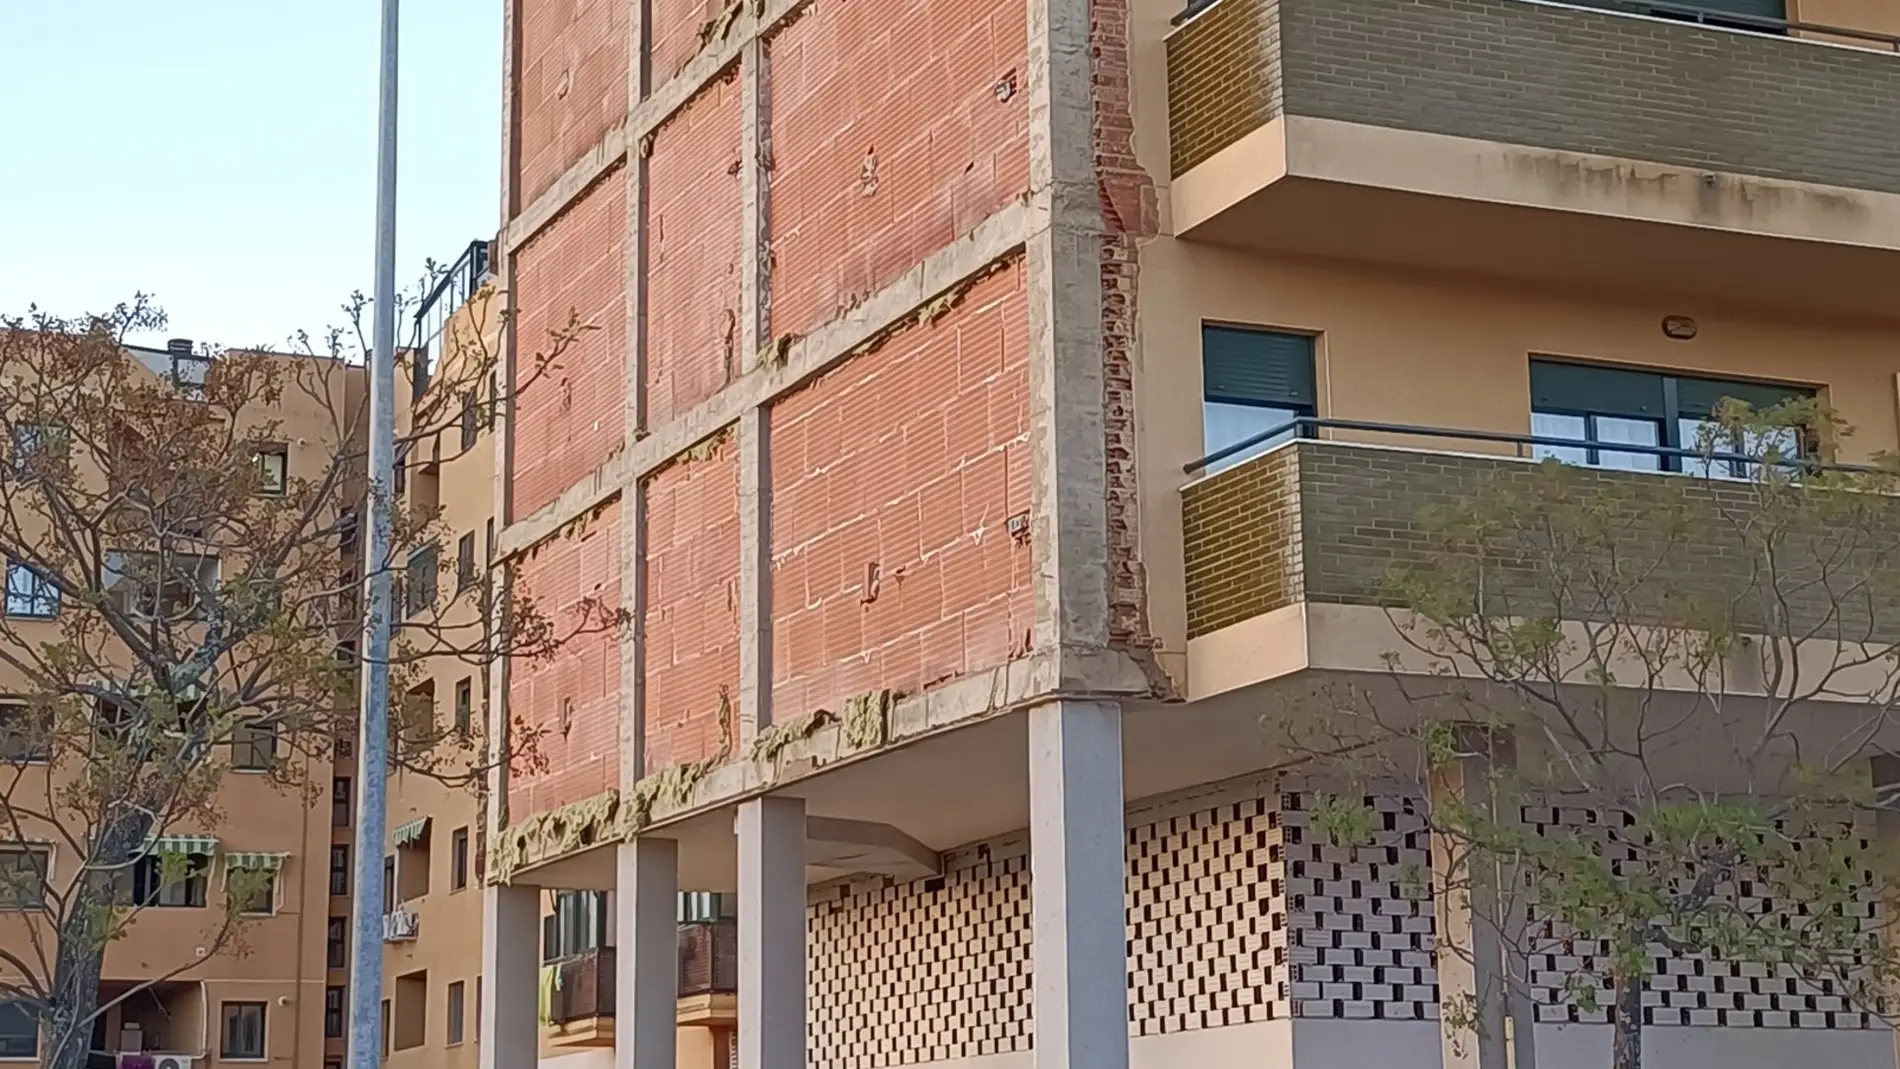 El derrumbe del revestimiento de la fachada de un edificio en Cáceres se salda sin causar daños personales